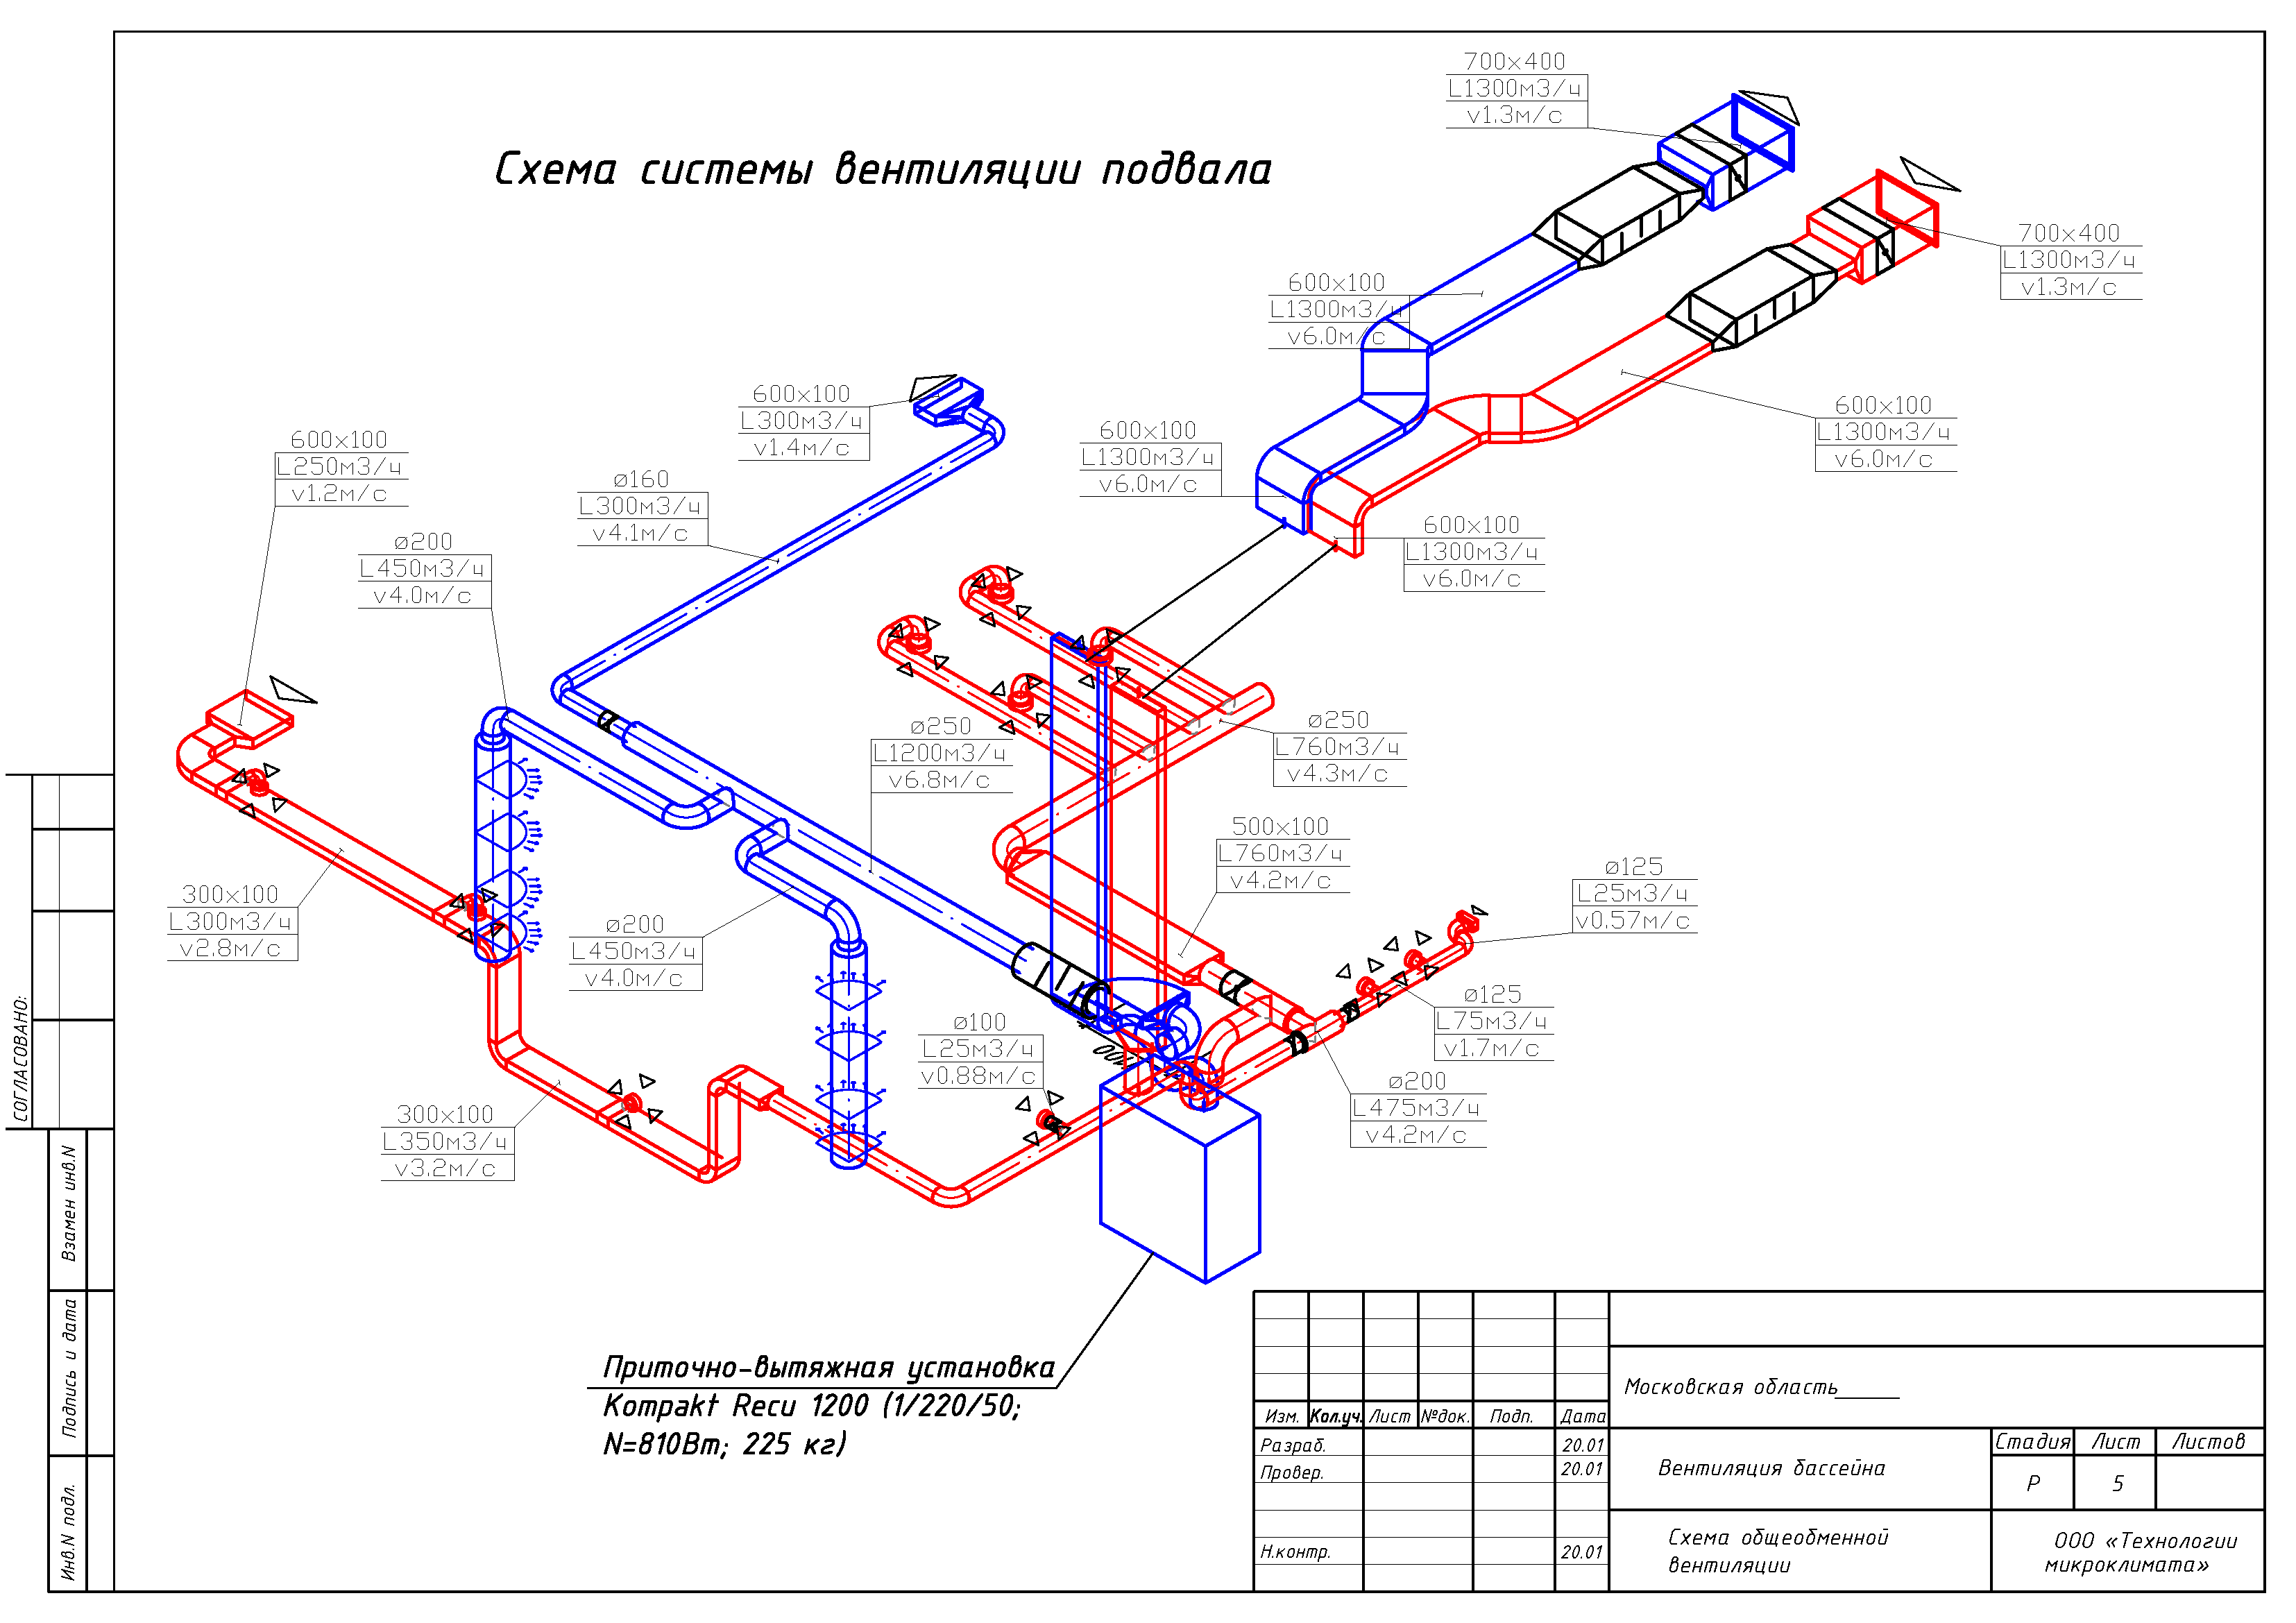 Программа для проектированиясистем внутреннего водопроводаи канализации зданий